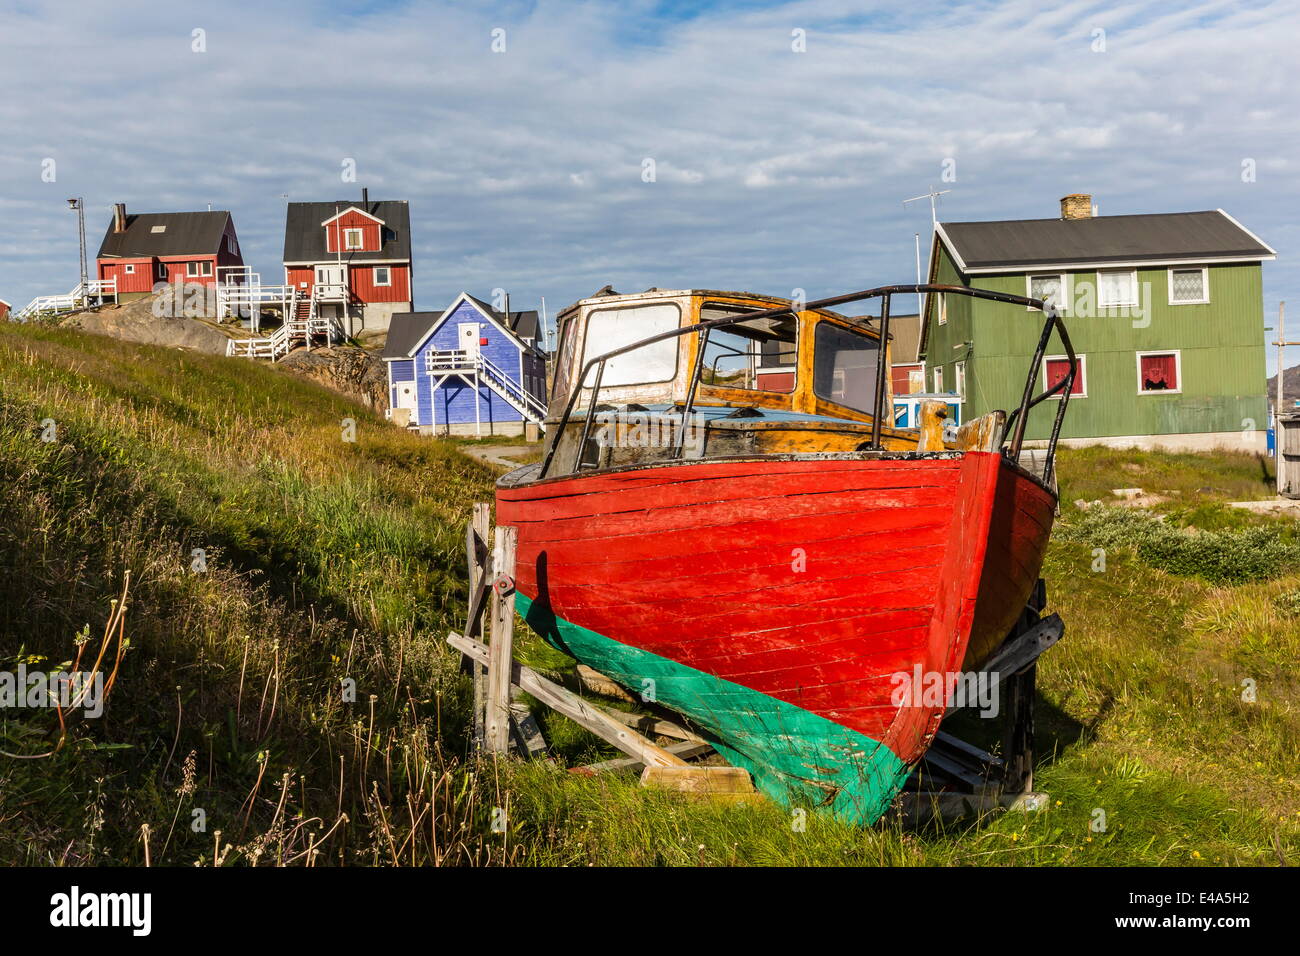 Las casas pintadas con colores brillantes y barco en Sisimiut, Groenlandia, las regiones polares Foto de stock